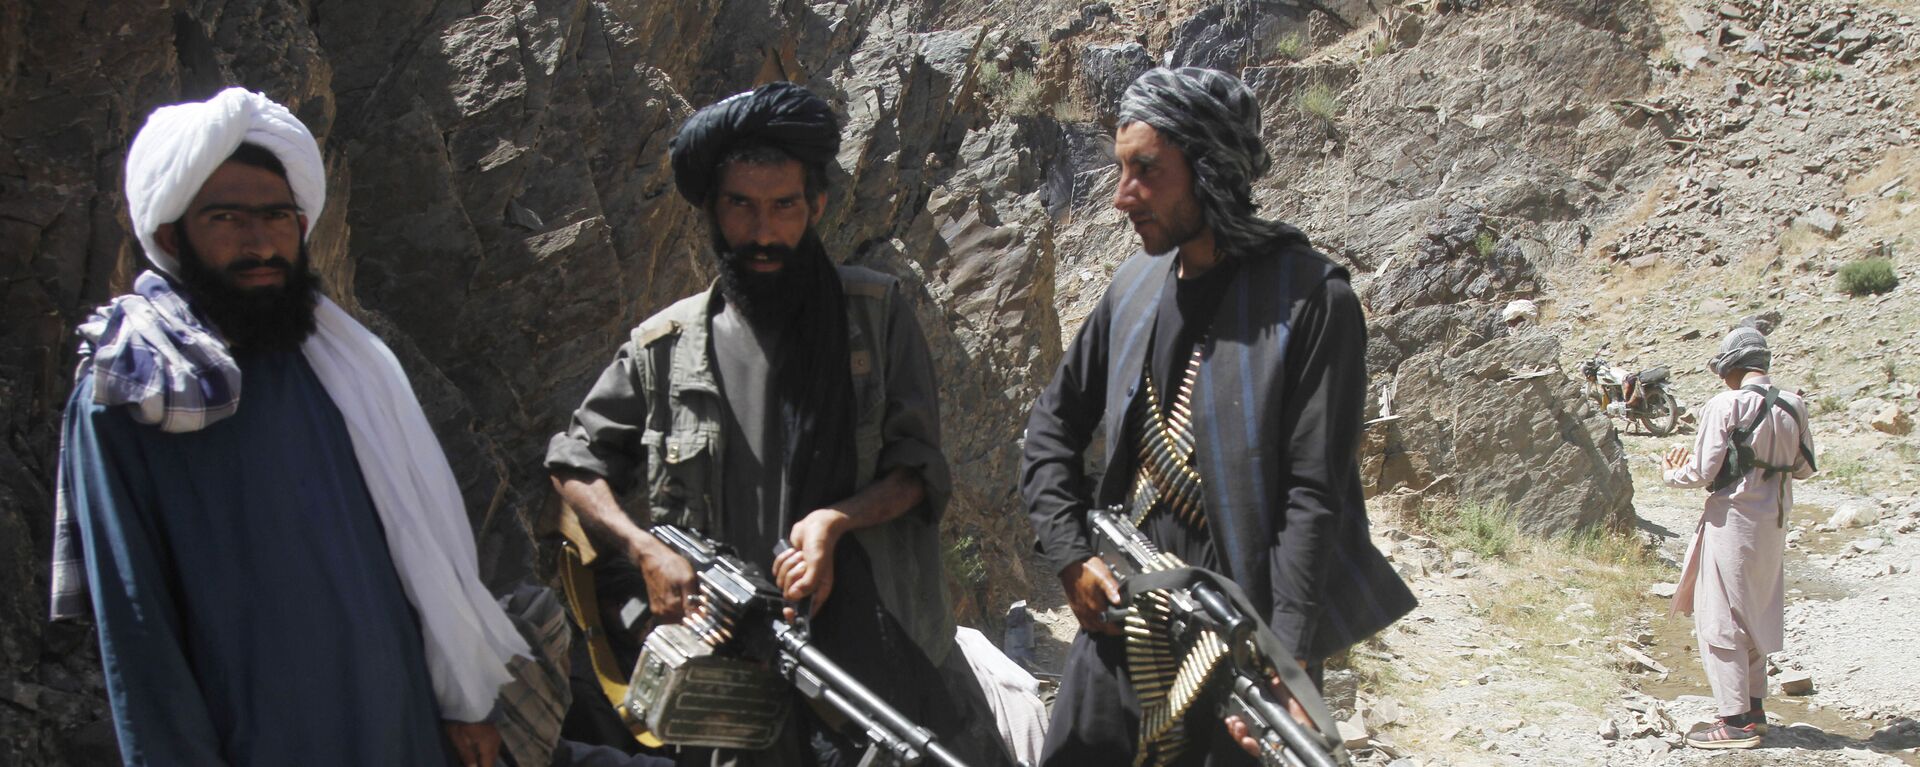 Membros de uma facção dissidente dos combatentes do Talibã durante uma patrulha no distrito de Shindand na província de Herat, Afeganistão (foto de arquivo) - Sputnik Brasil, 1920, 13.07.2021